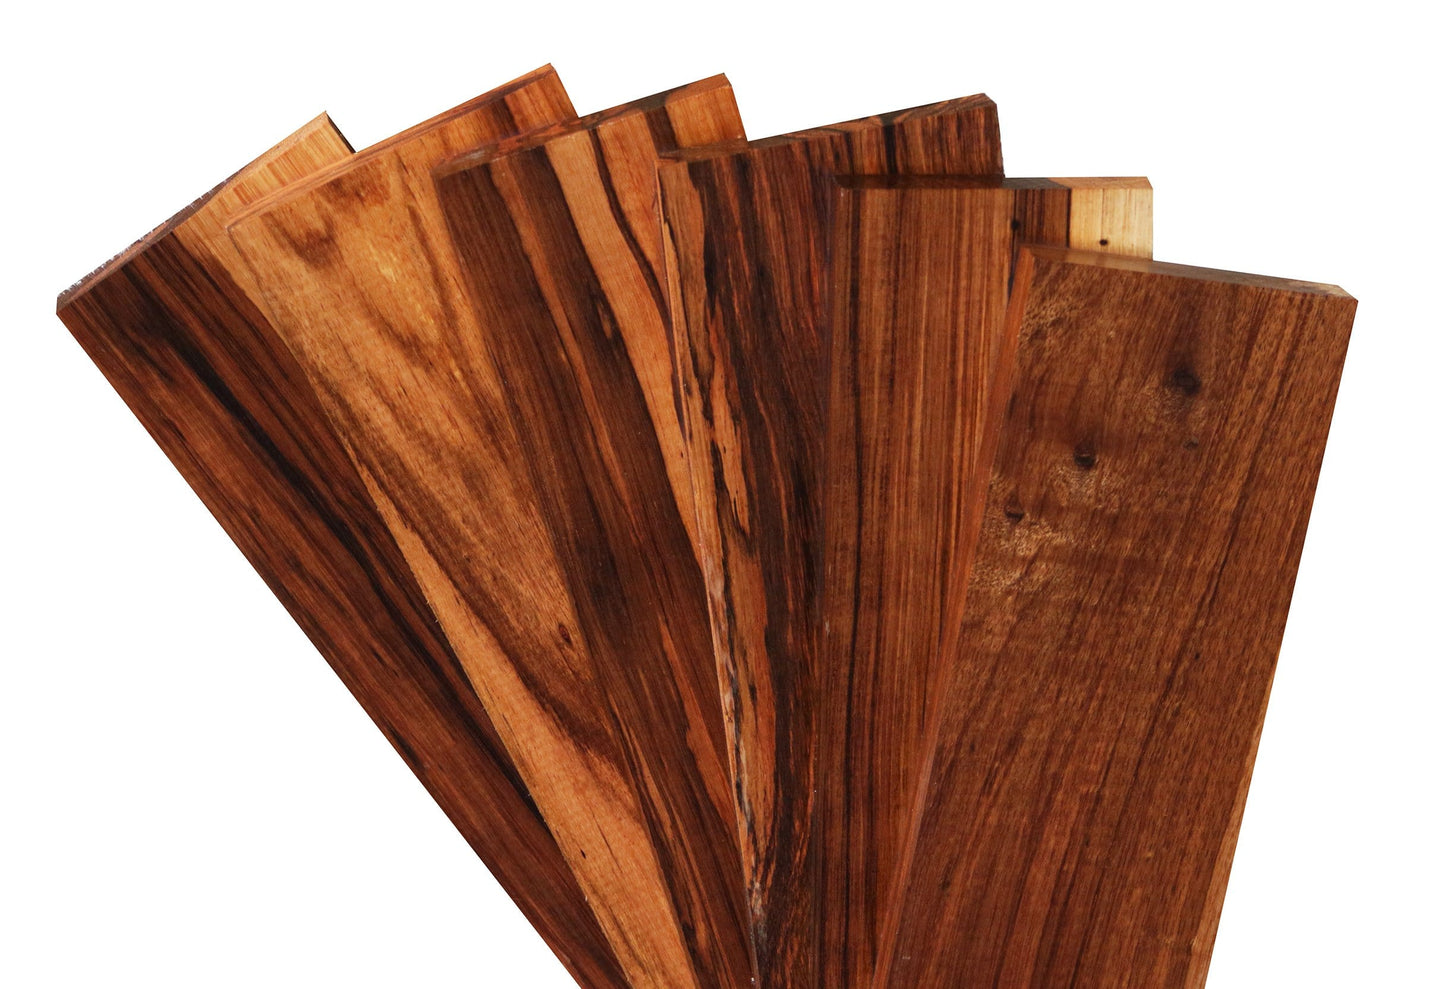 Monterillo Rosewood Lumber (16" x 2-3/4" x 3/4")